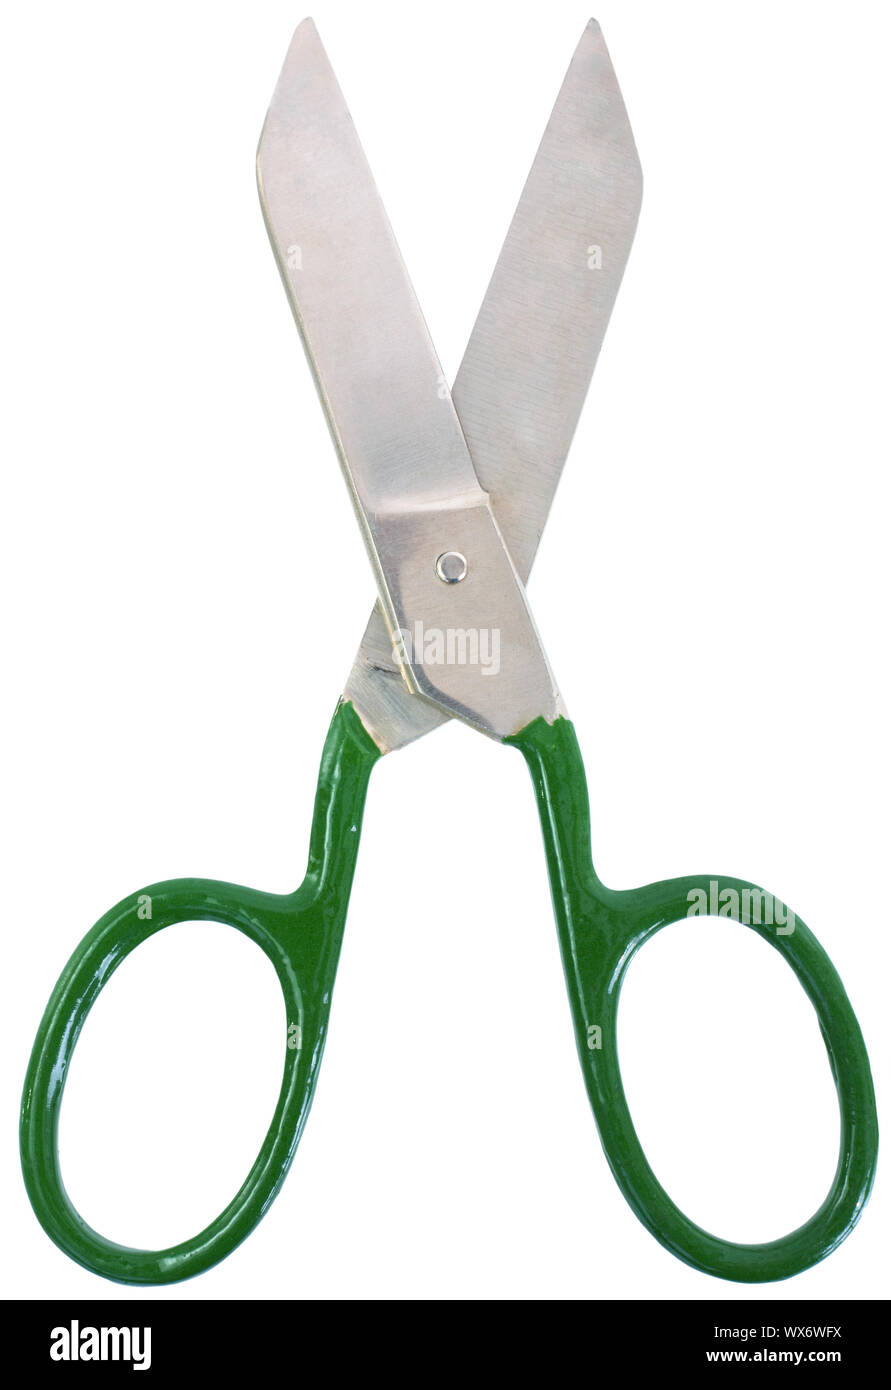 Big scissors. Ножницы с зелеными ручками. Ножницы портные с зелёной ручкой. Железные ножницы зеленой ручкой. Ножницы с большими металлическими кольцами садовые.